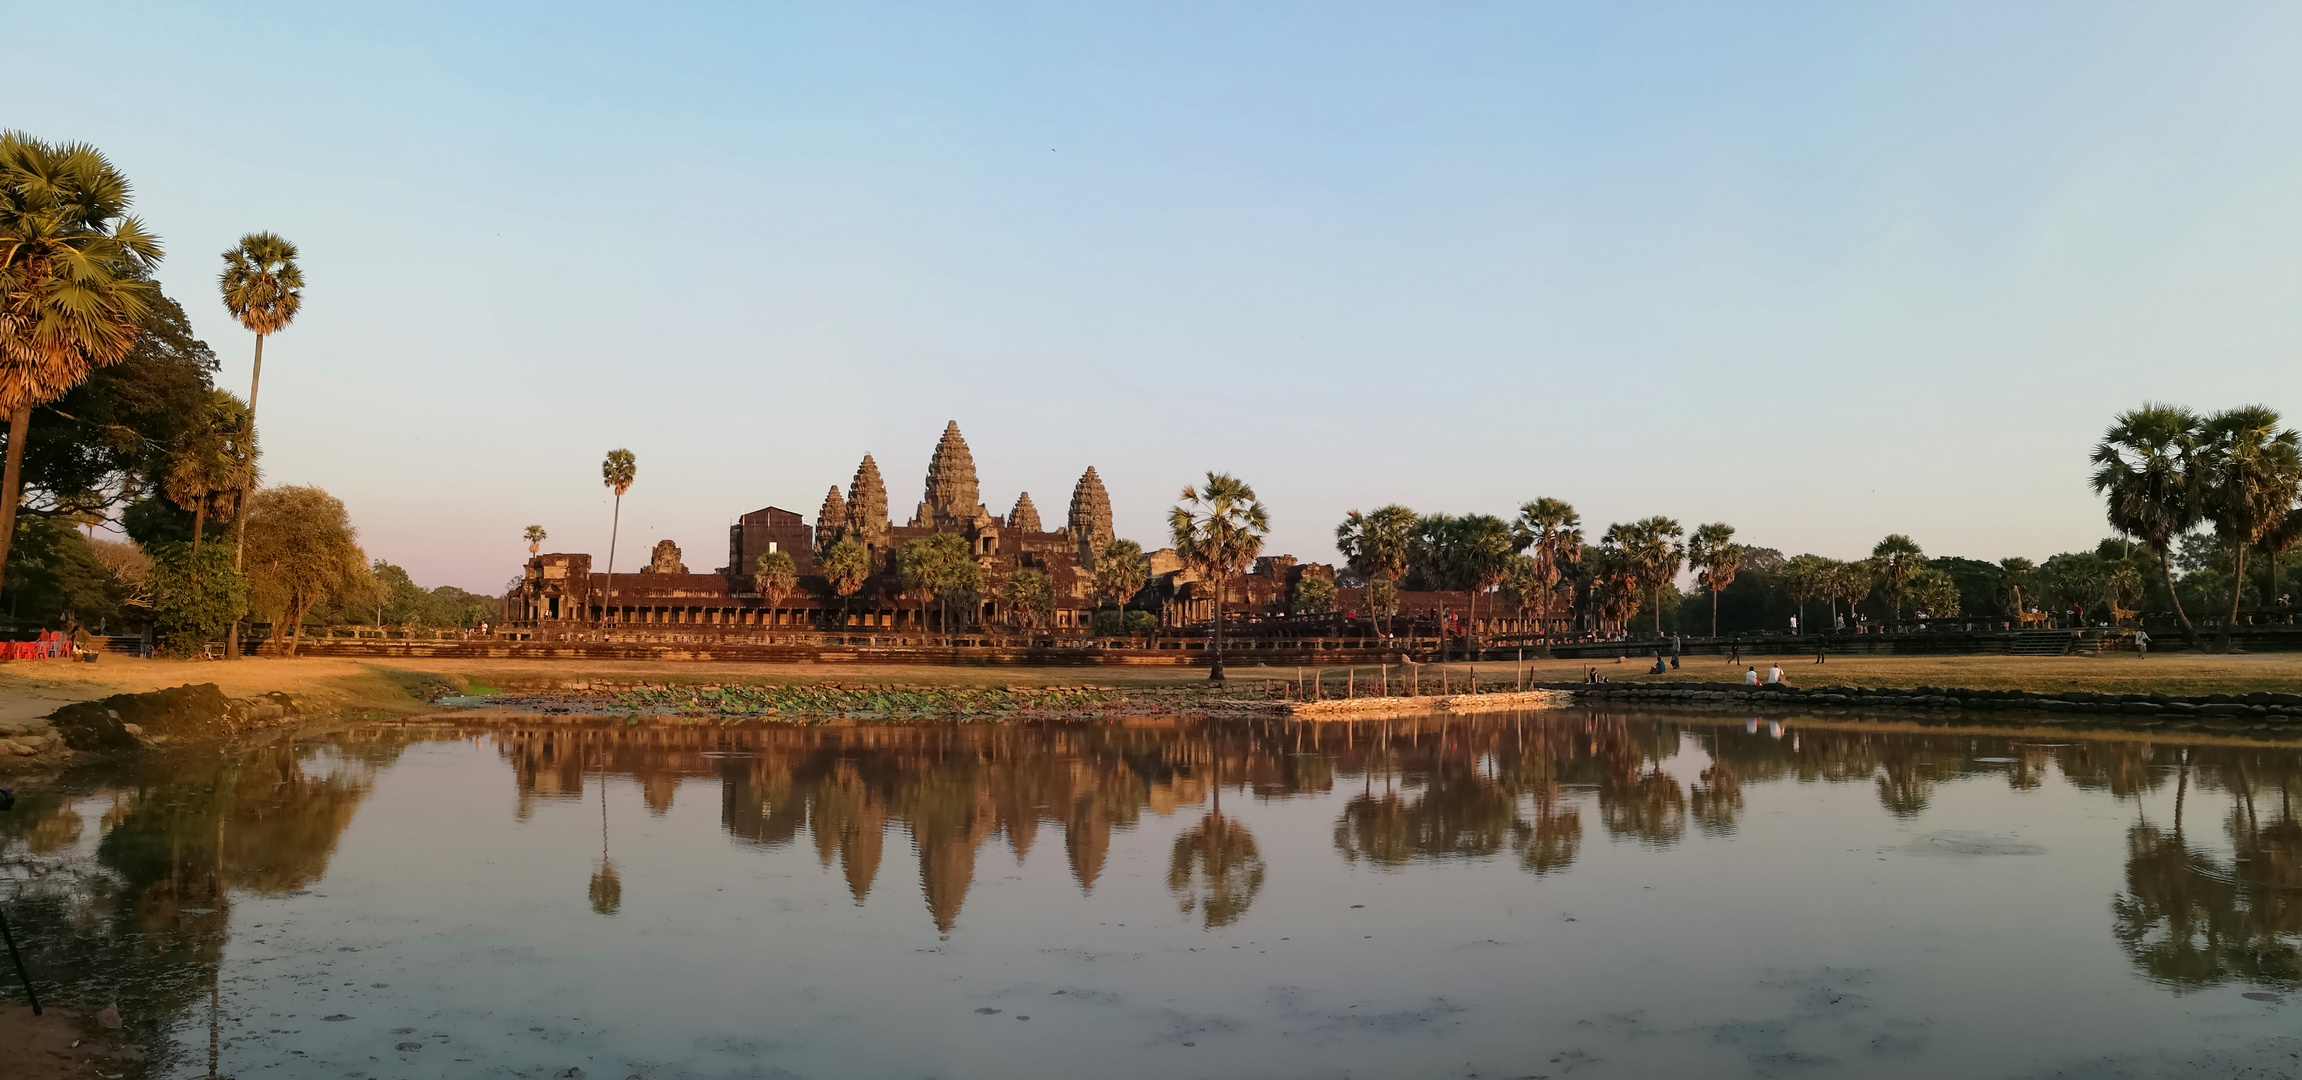 - Angkor Wat -